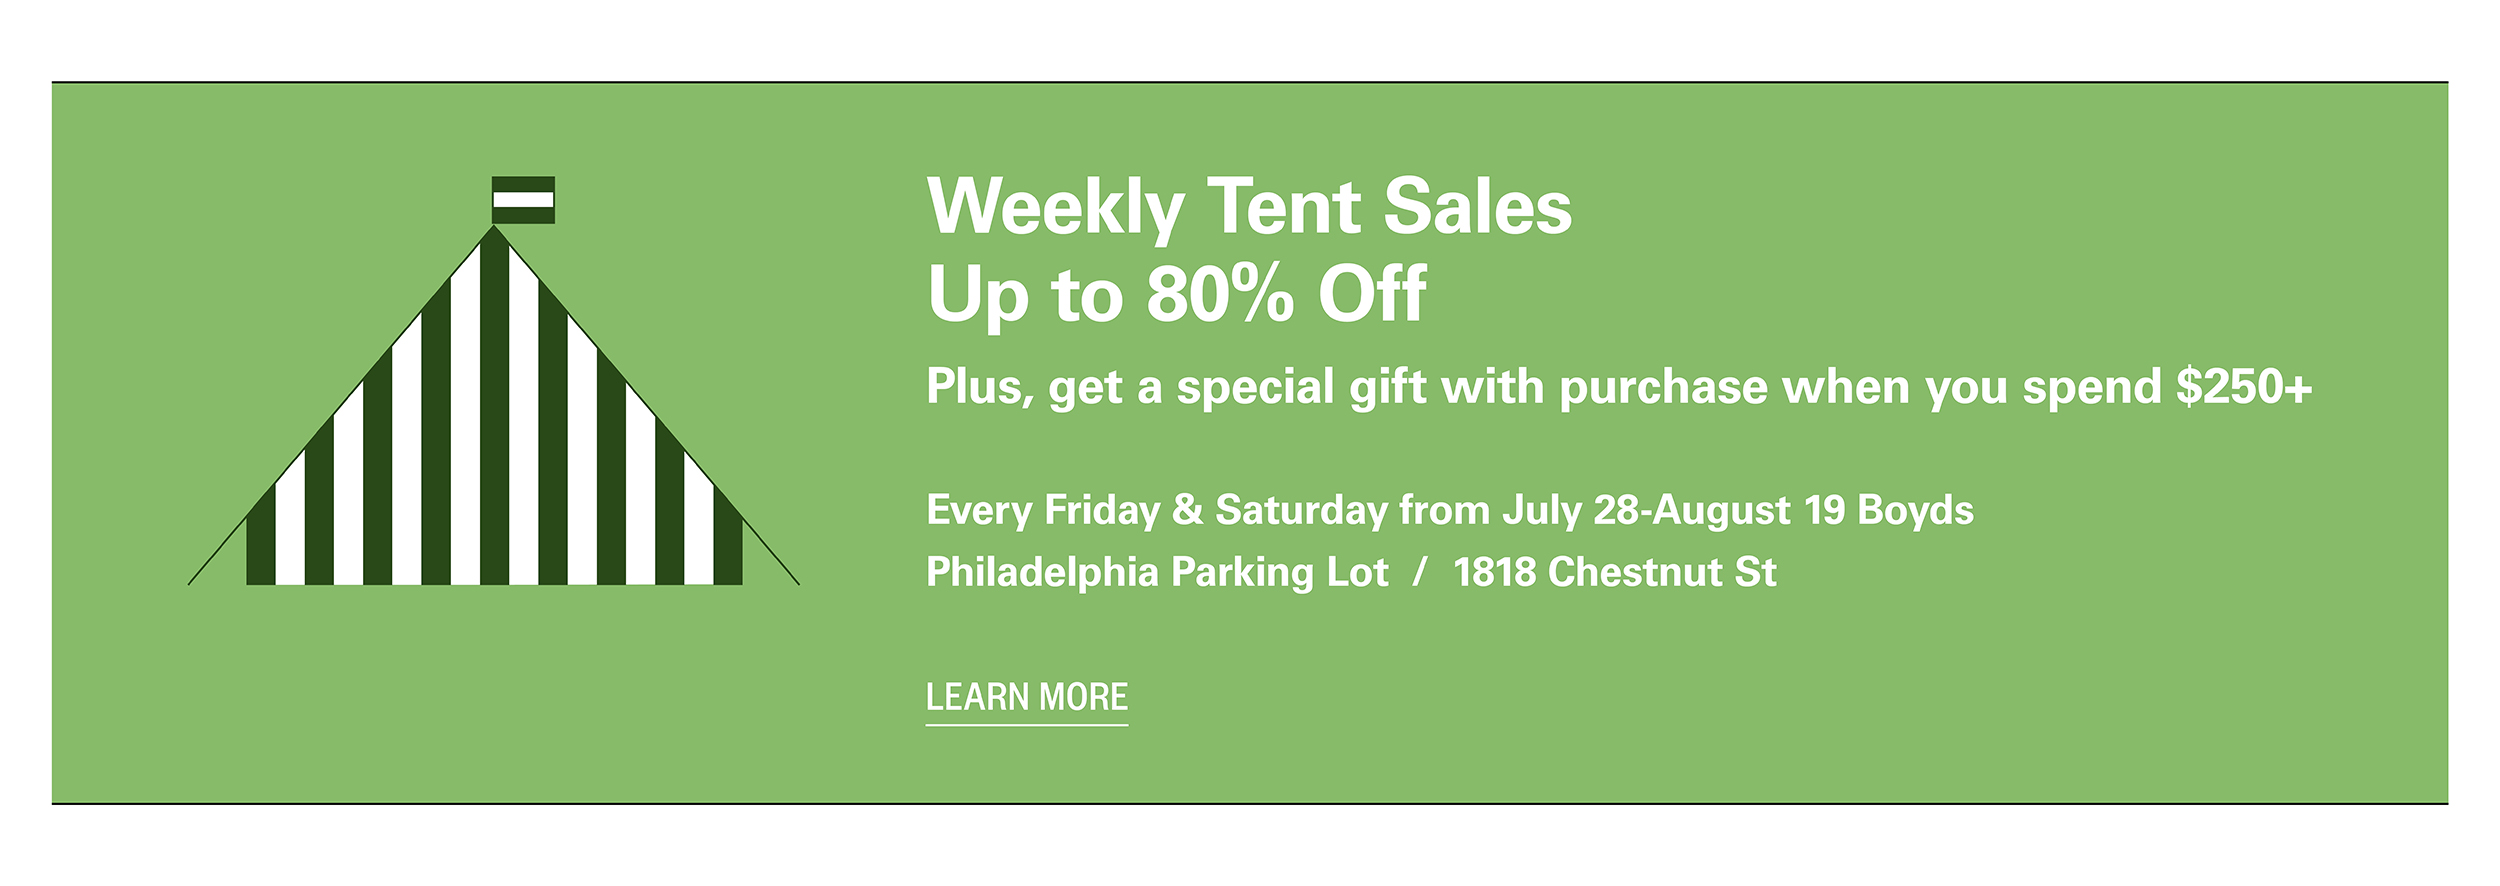 Tent Sales